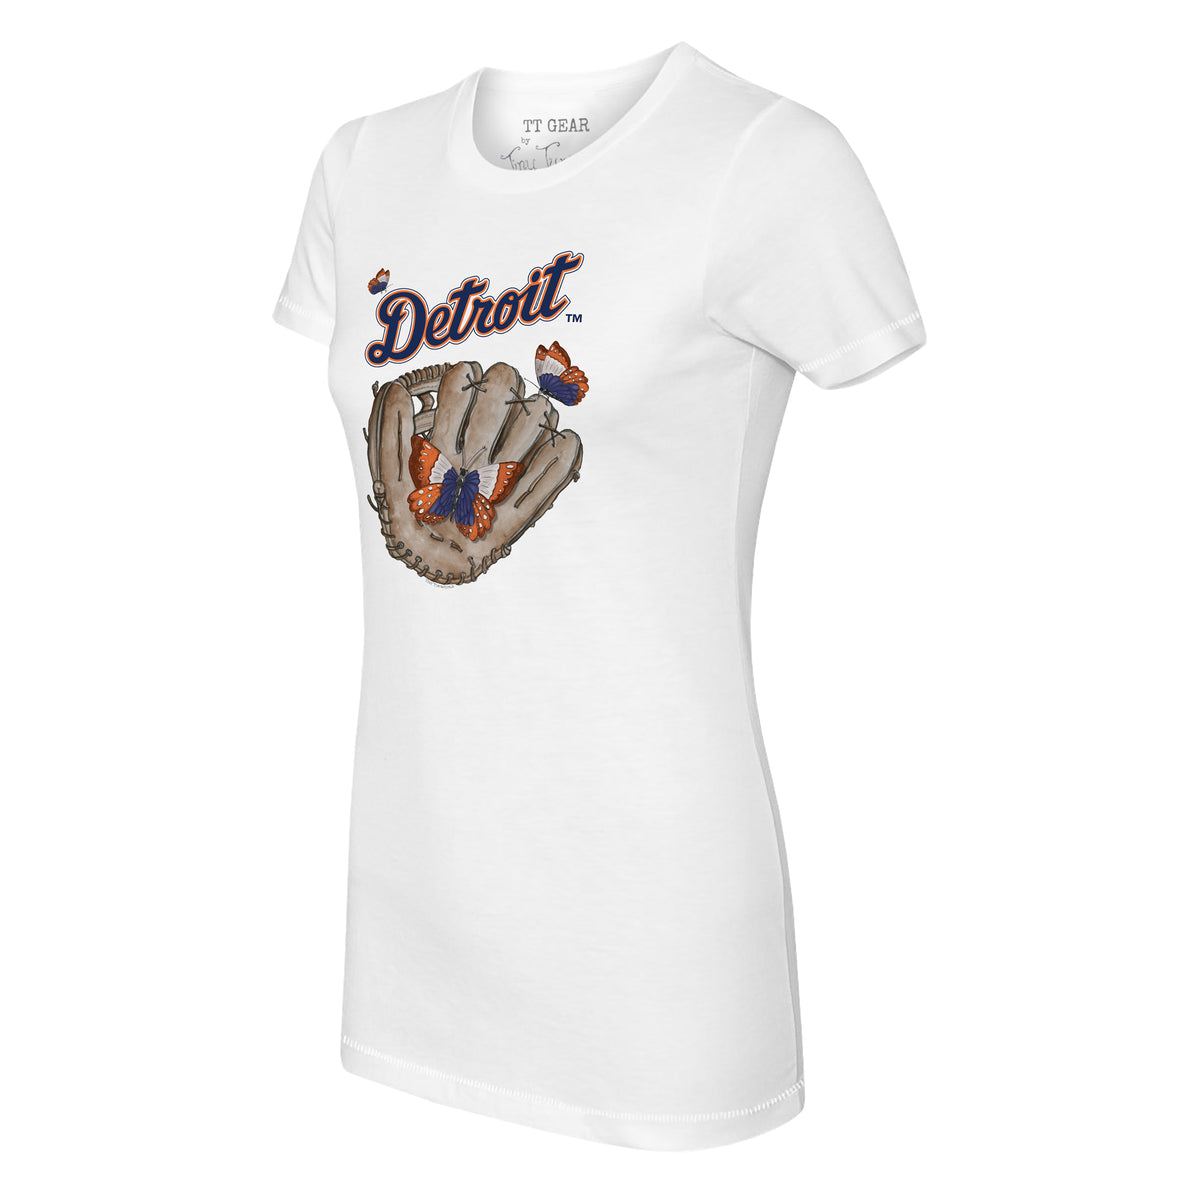 Detroit Tigers Butterfly Glove Tee Shirt